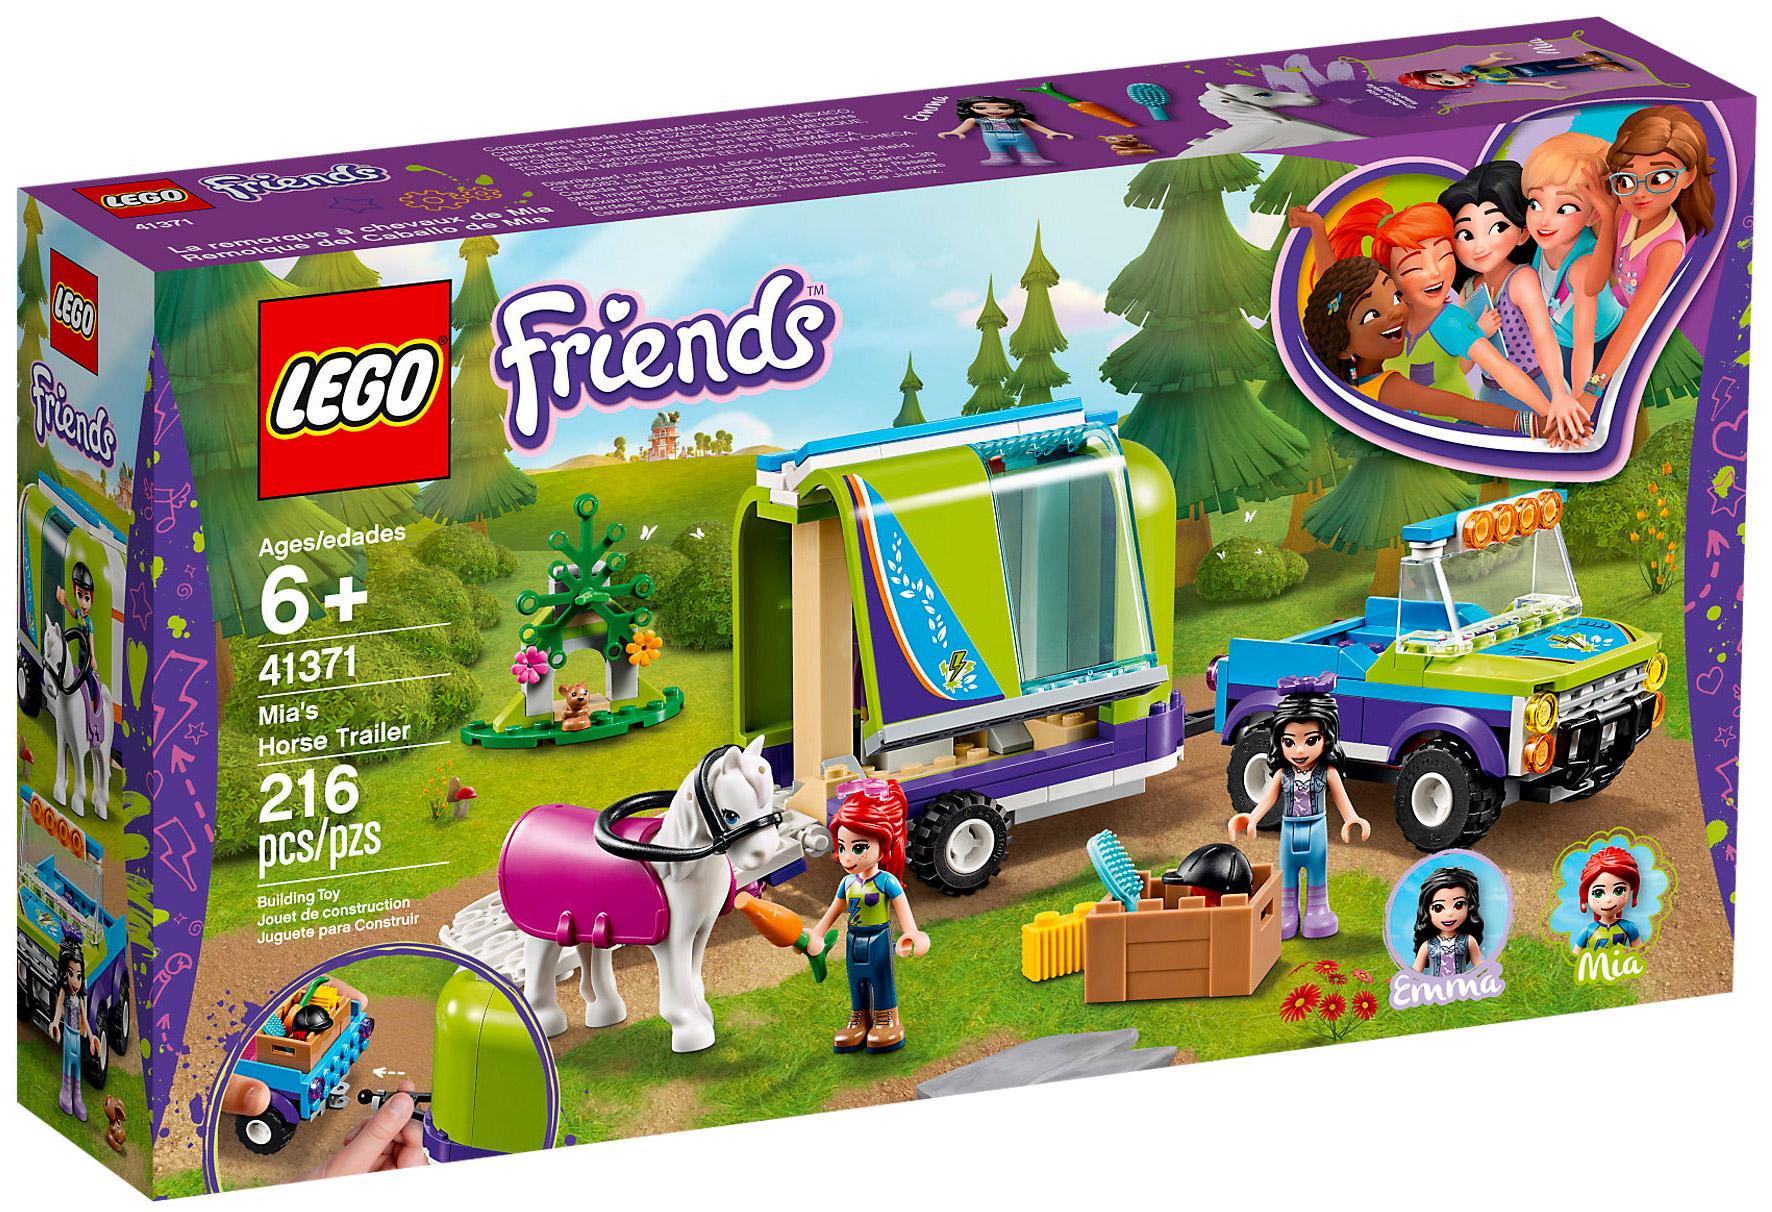 LEGO® Friends 41358 La boîte cœur de Mia - Lego - Achat & prix